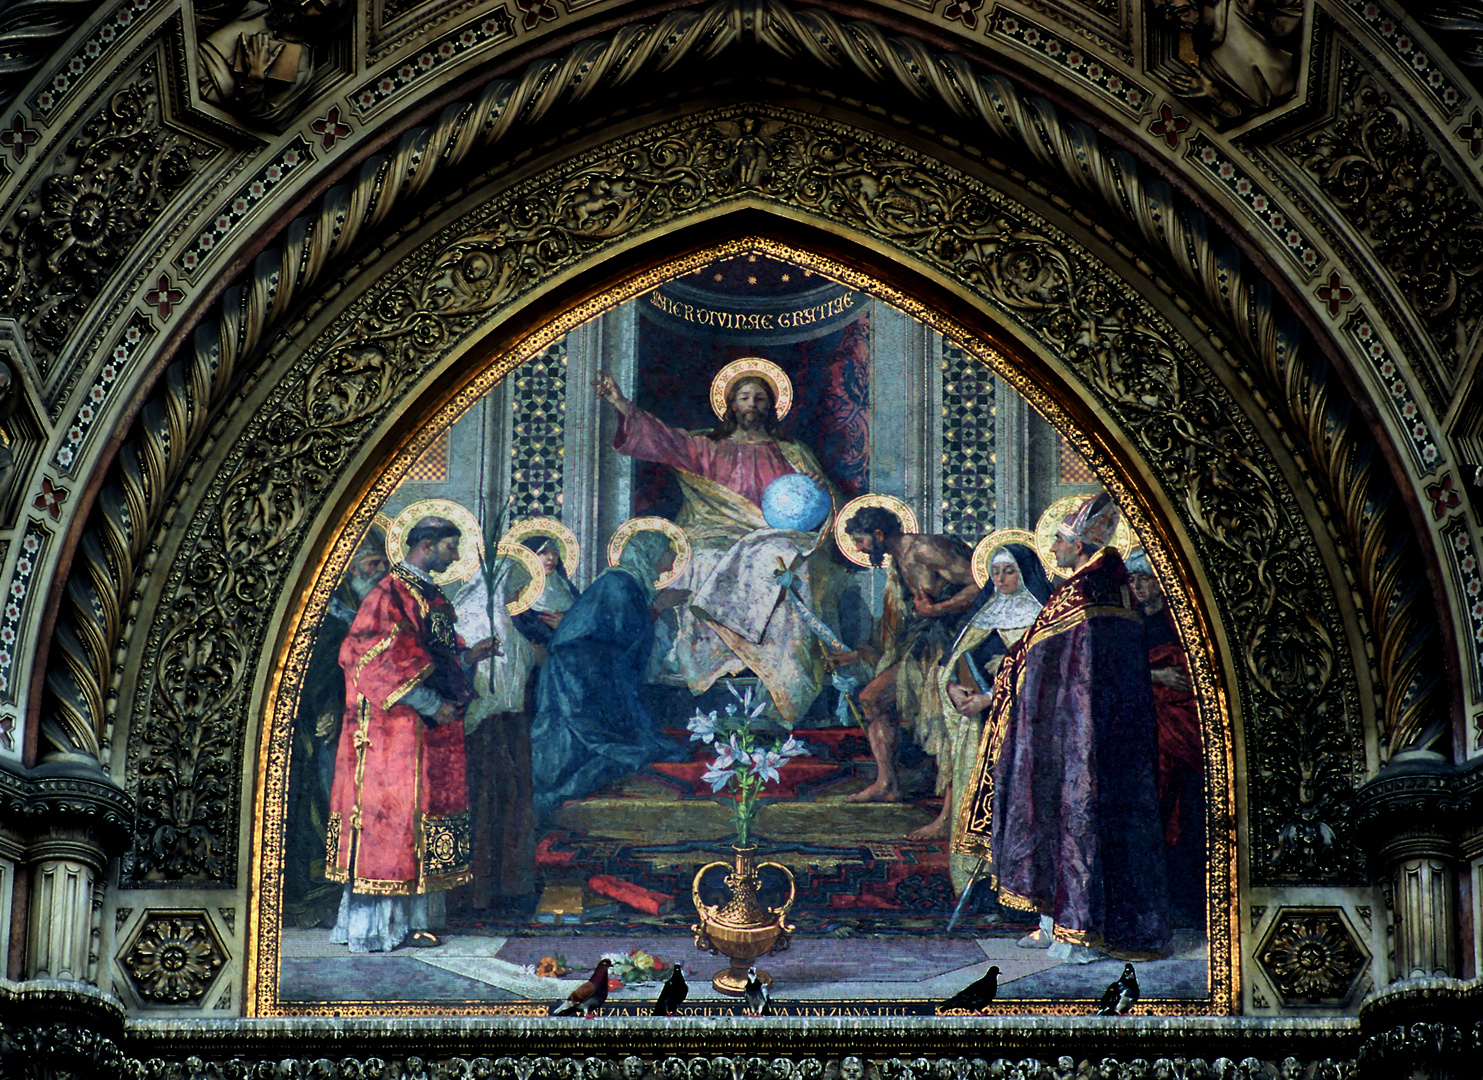 Duomo S. Maria in Florenz